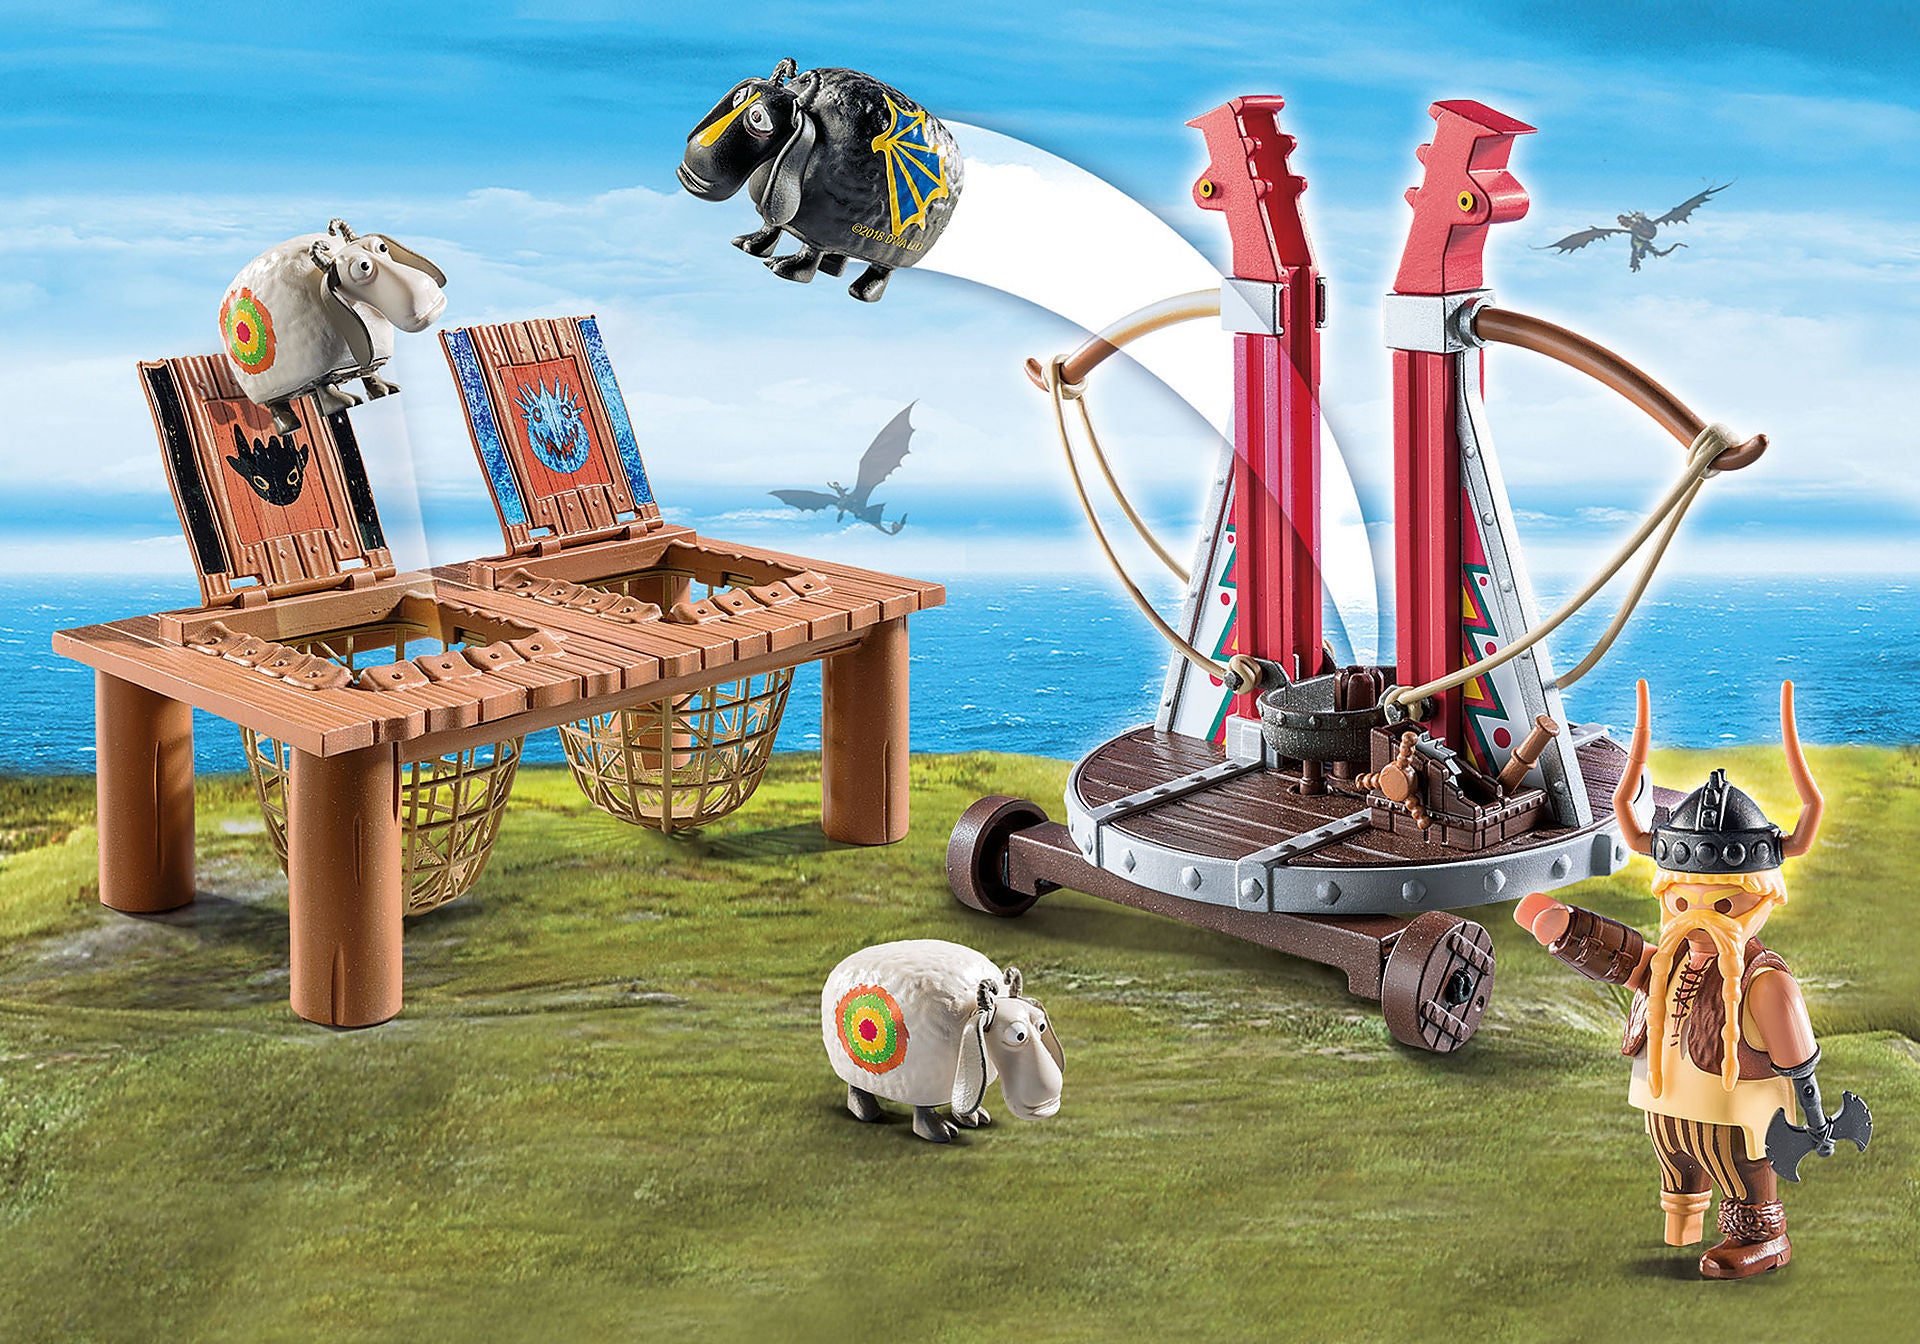 Playmobil Dragons de Dreamworks: Bocon con Lanzadera de Ovejas 9461